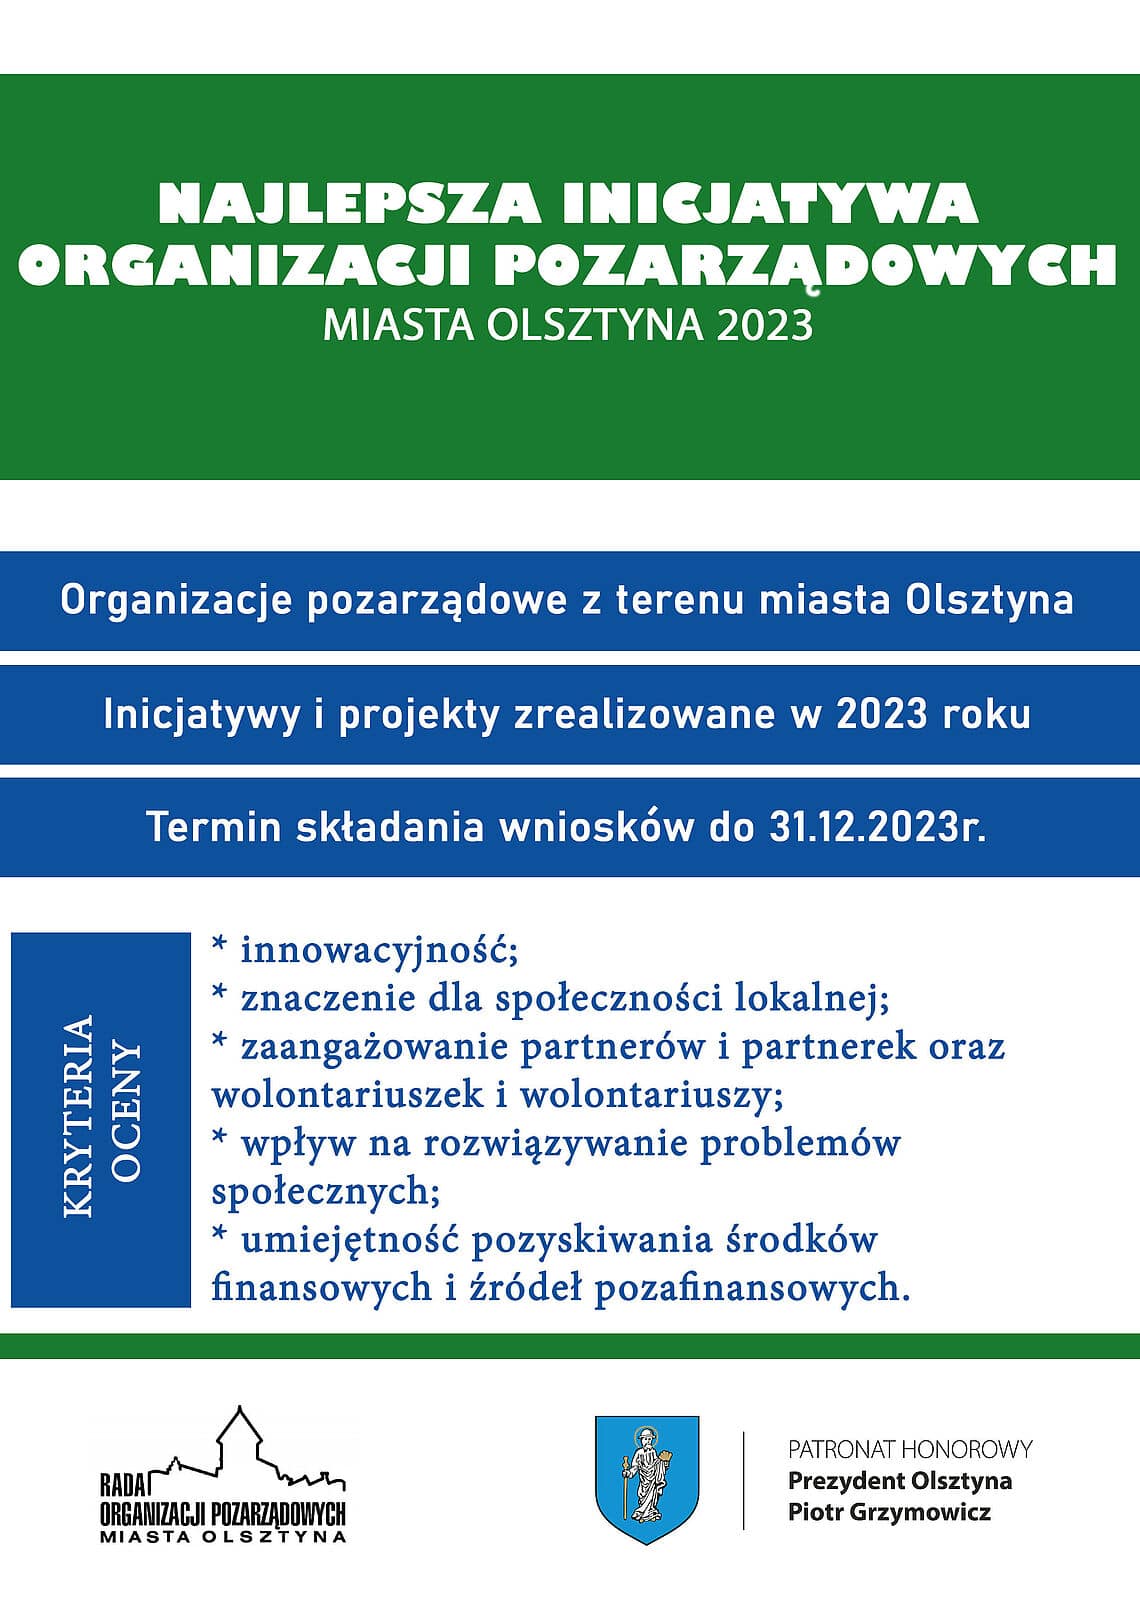 Walka o tytuł najciekawszej inicjatywy w Olsztynie: Kto w tym roku okaże się liderem zmian społecznych? społeczeństwo Olsztyn, Wiadomości, zShowcase